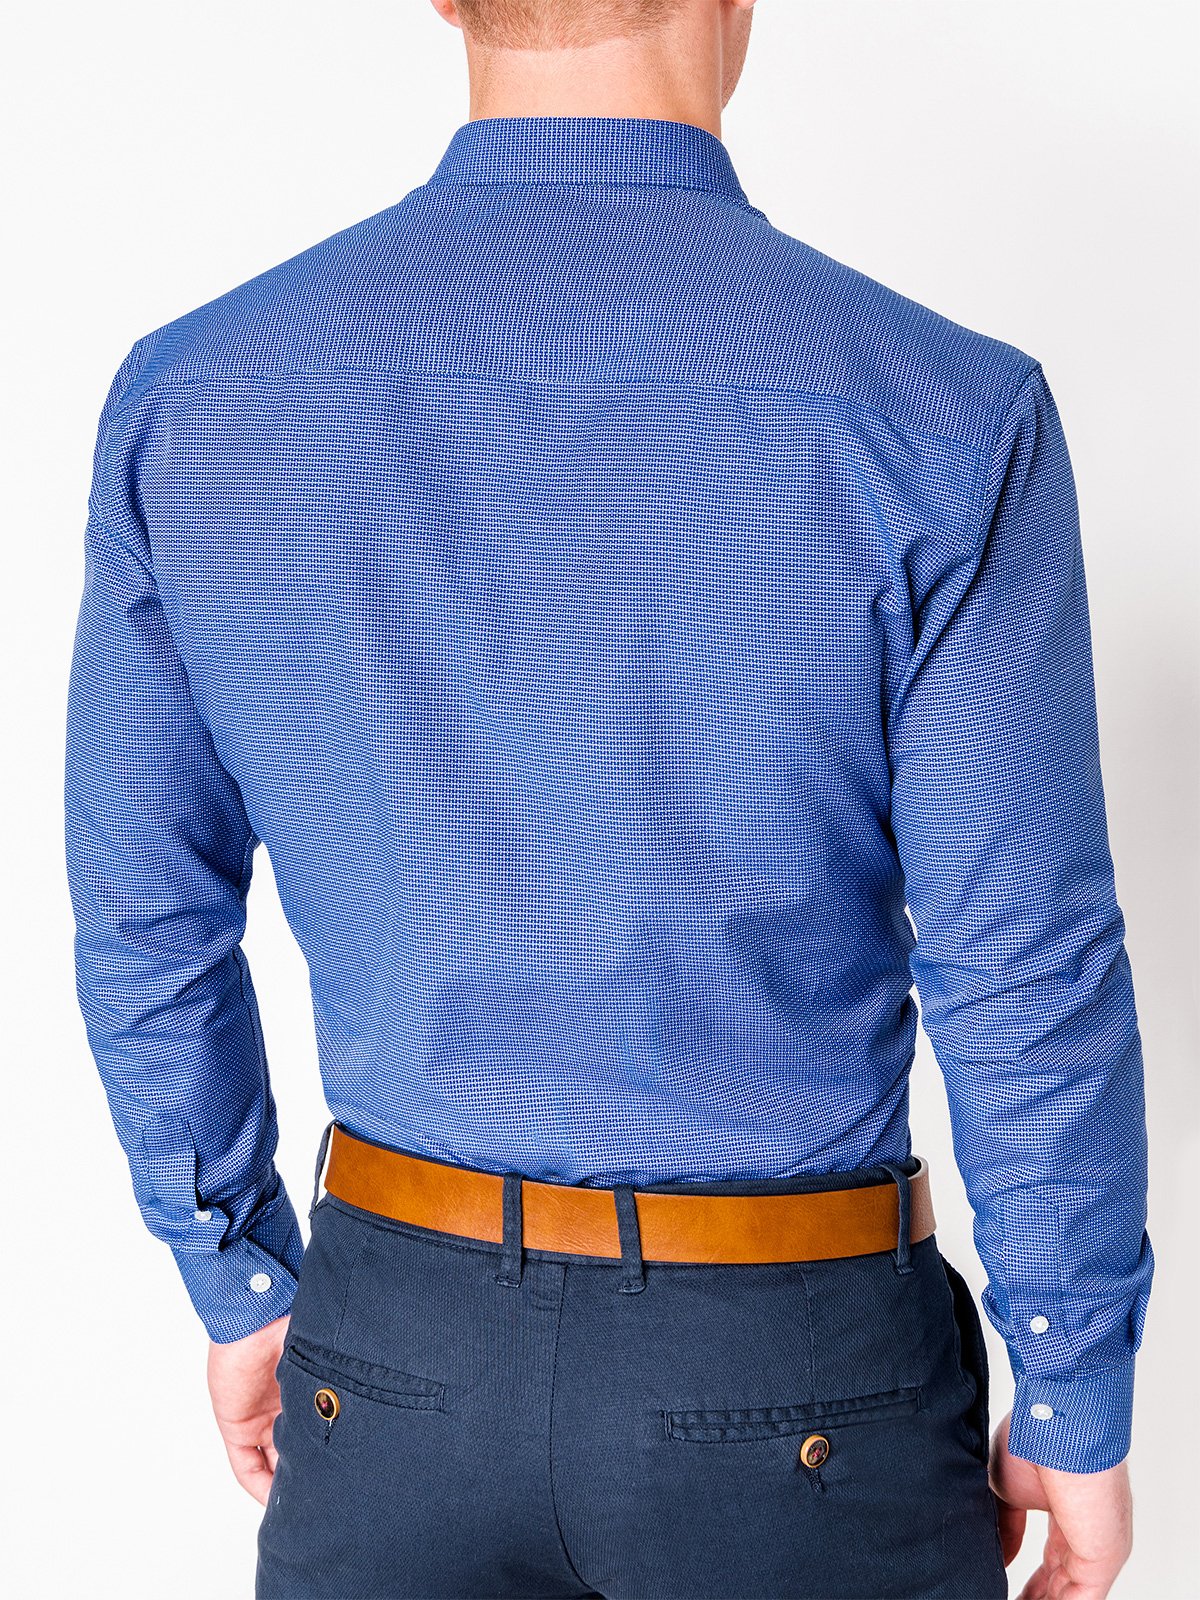 Men's elegant shirt with long sleeves - light navy K410 | MODONE ...